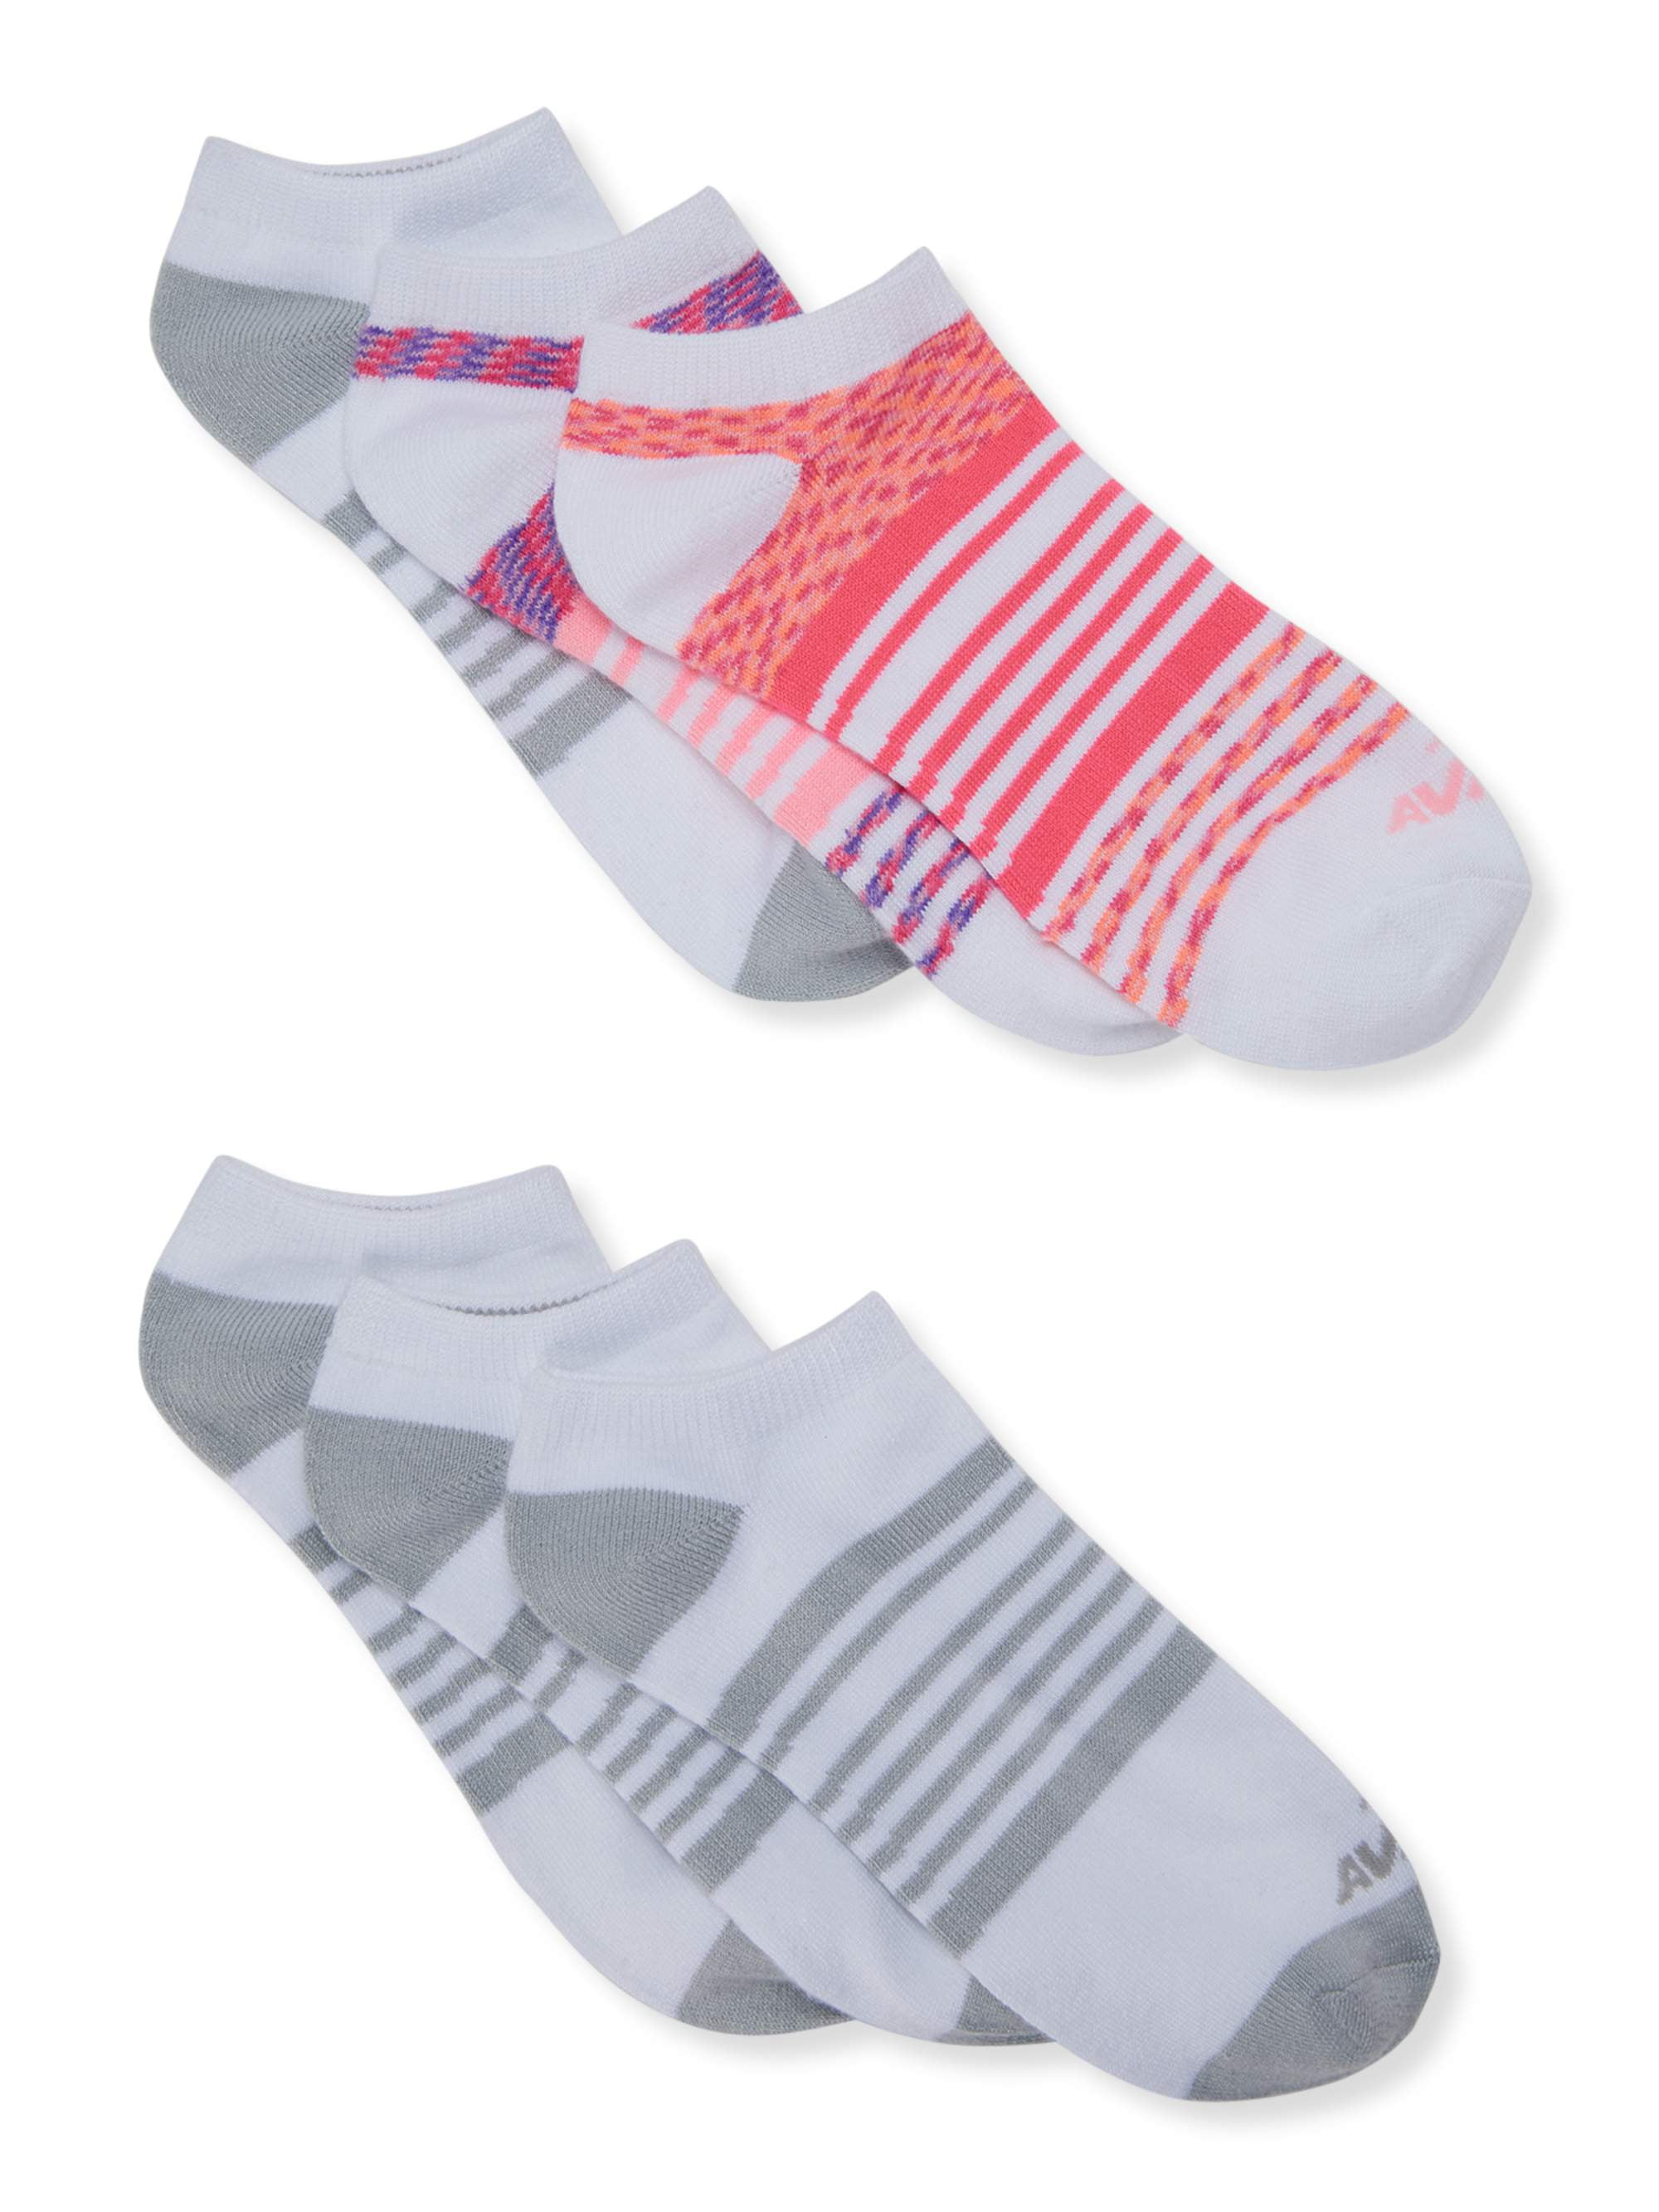 Avia Women' s Super Soft No Show Socks, 6 Pack - Walmart.com